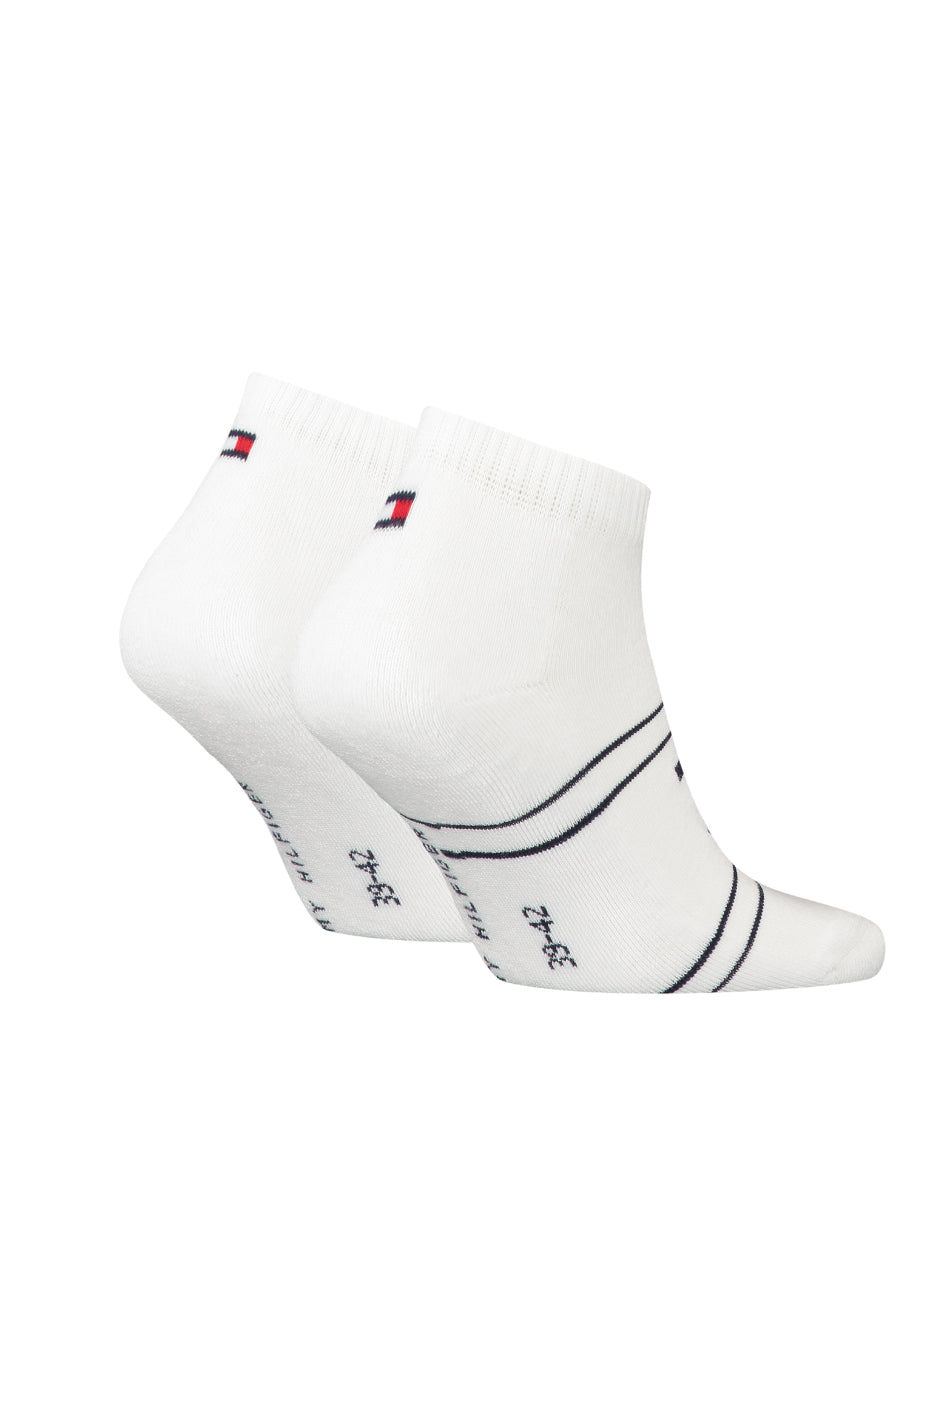 Tommy Hilfiger 2 Pack Men's Quarter Sport Sock